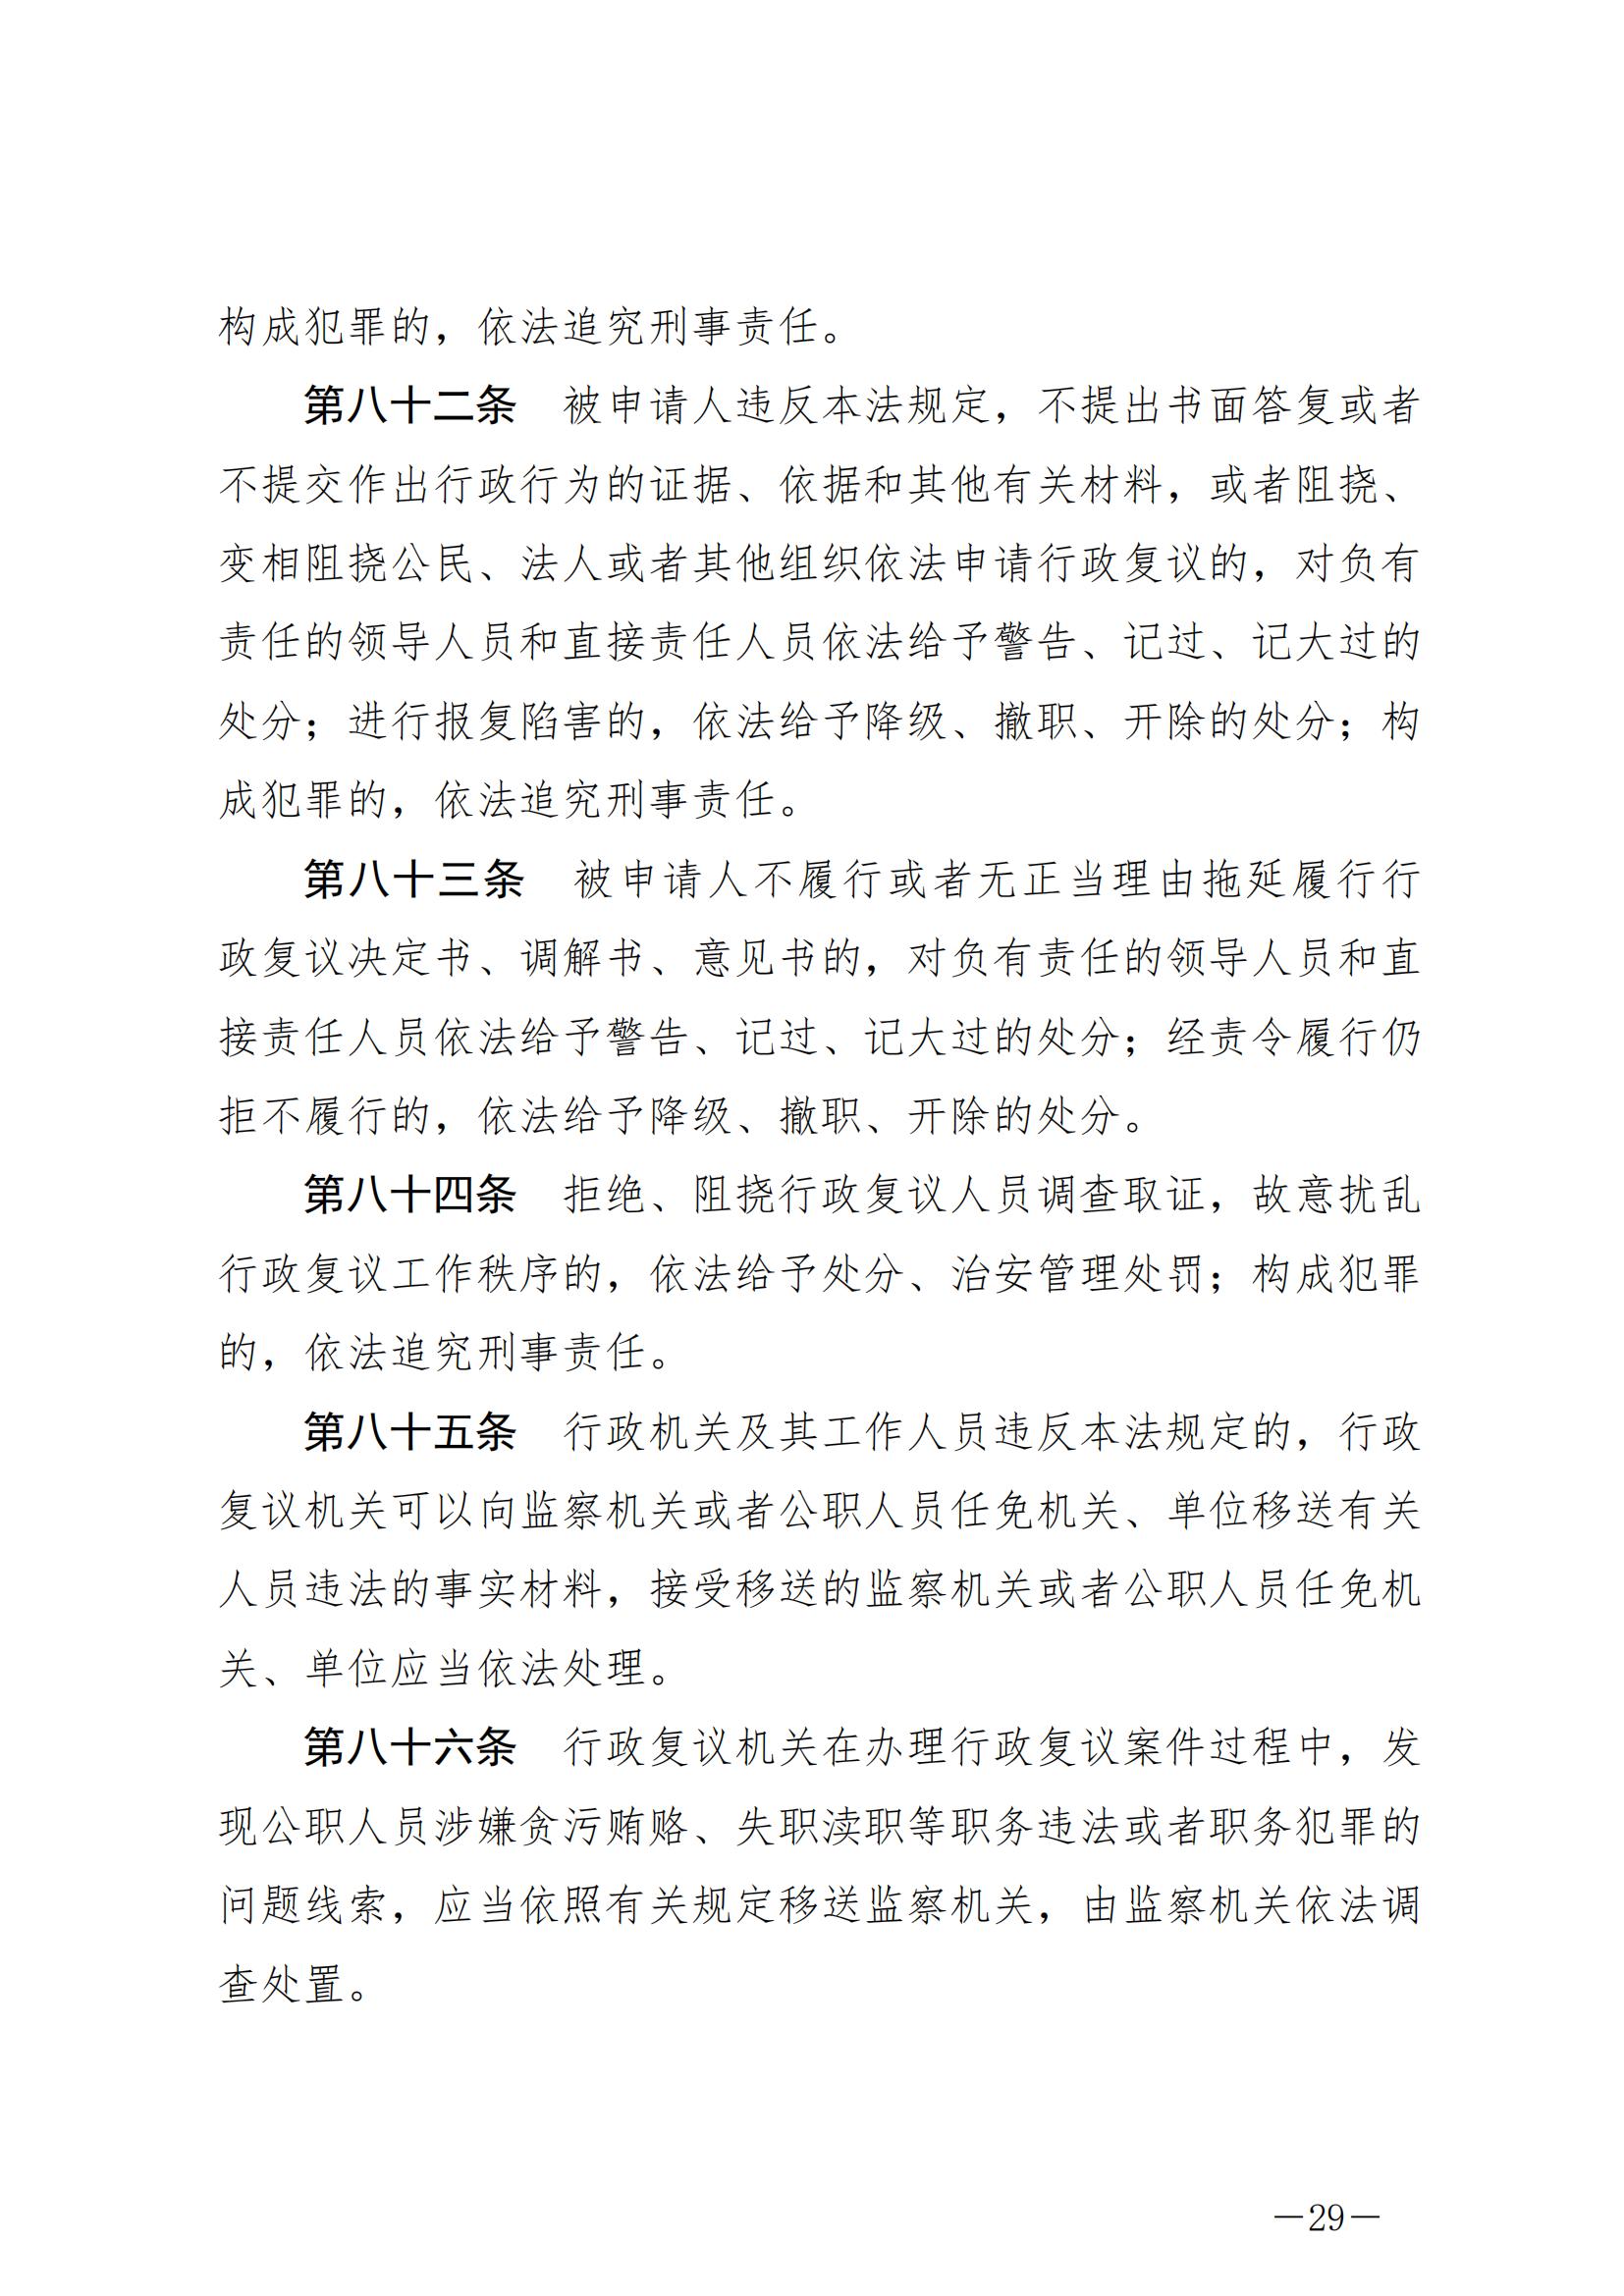 《中华人民共和国行政复议法》_20231204154310_28.jpg